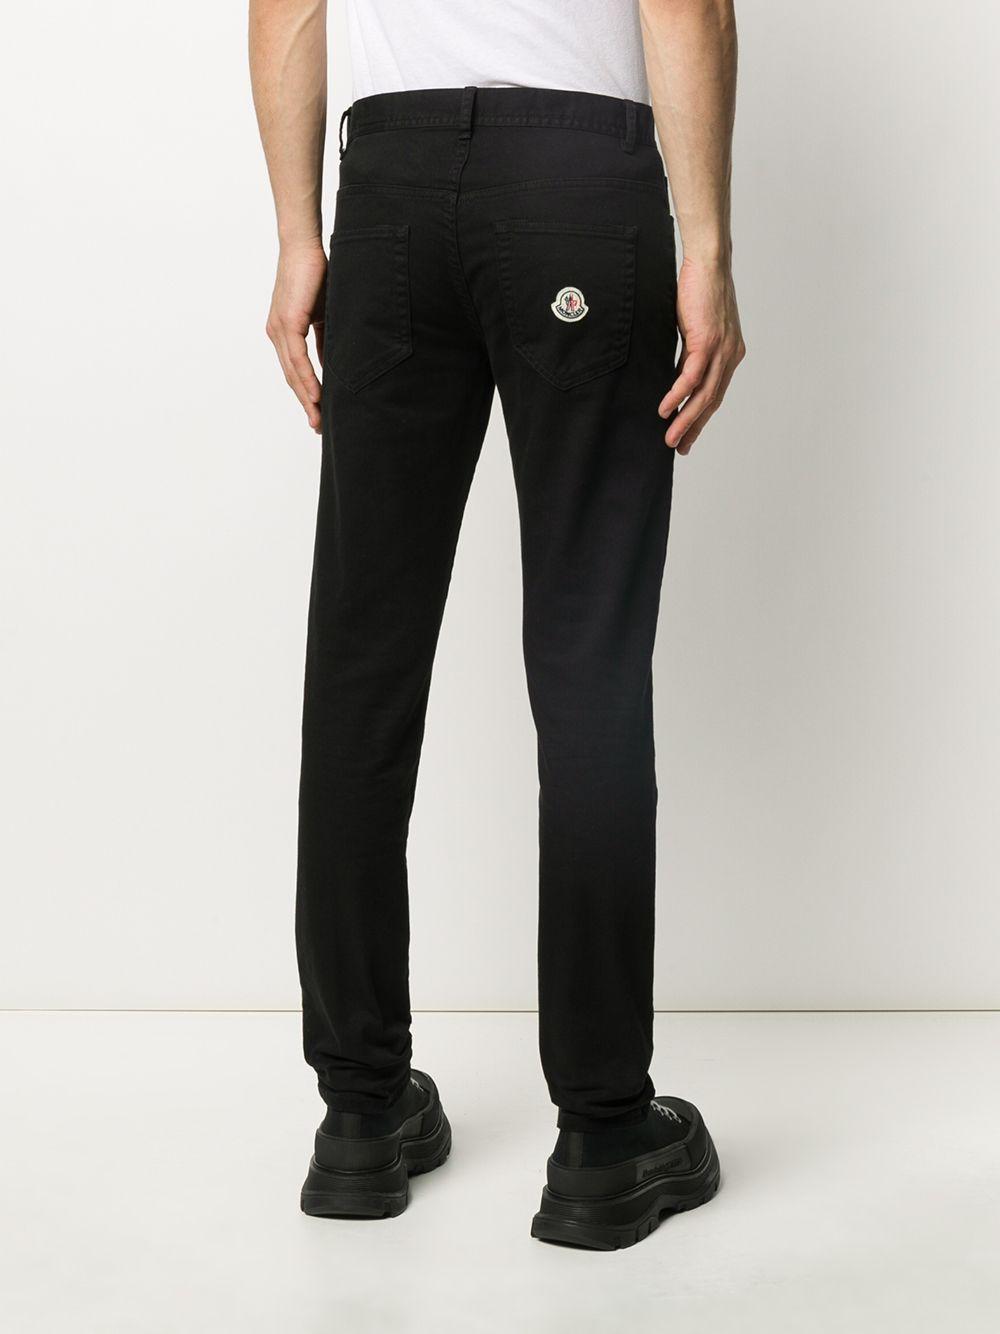 Moncler Denim Straight-leg Jeans in Black for Men - Lyst